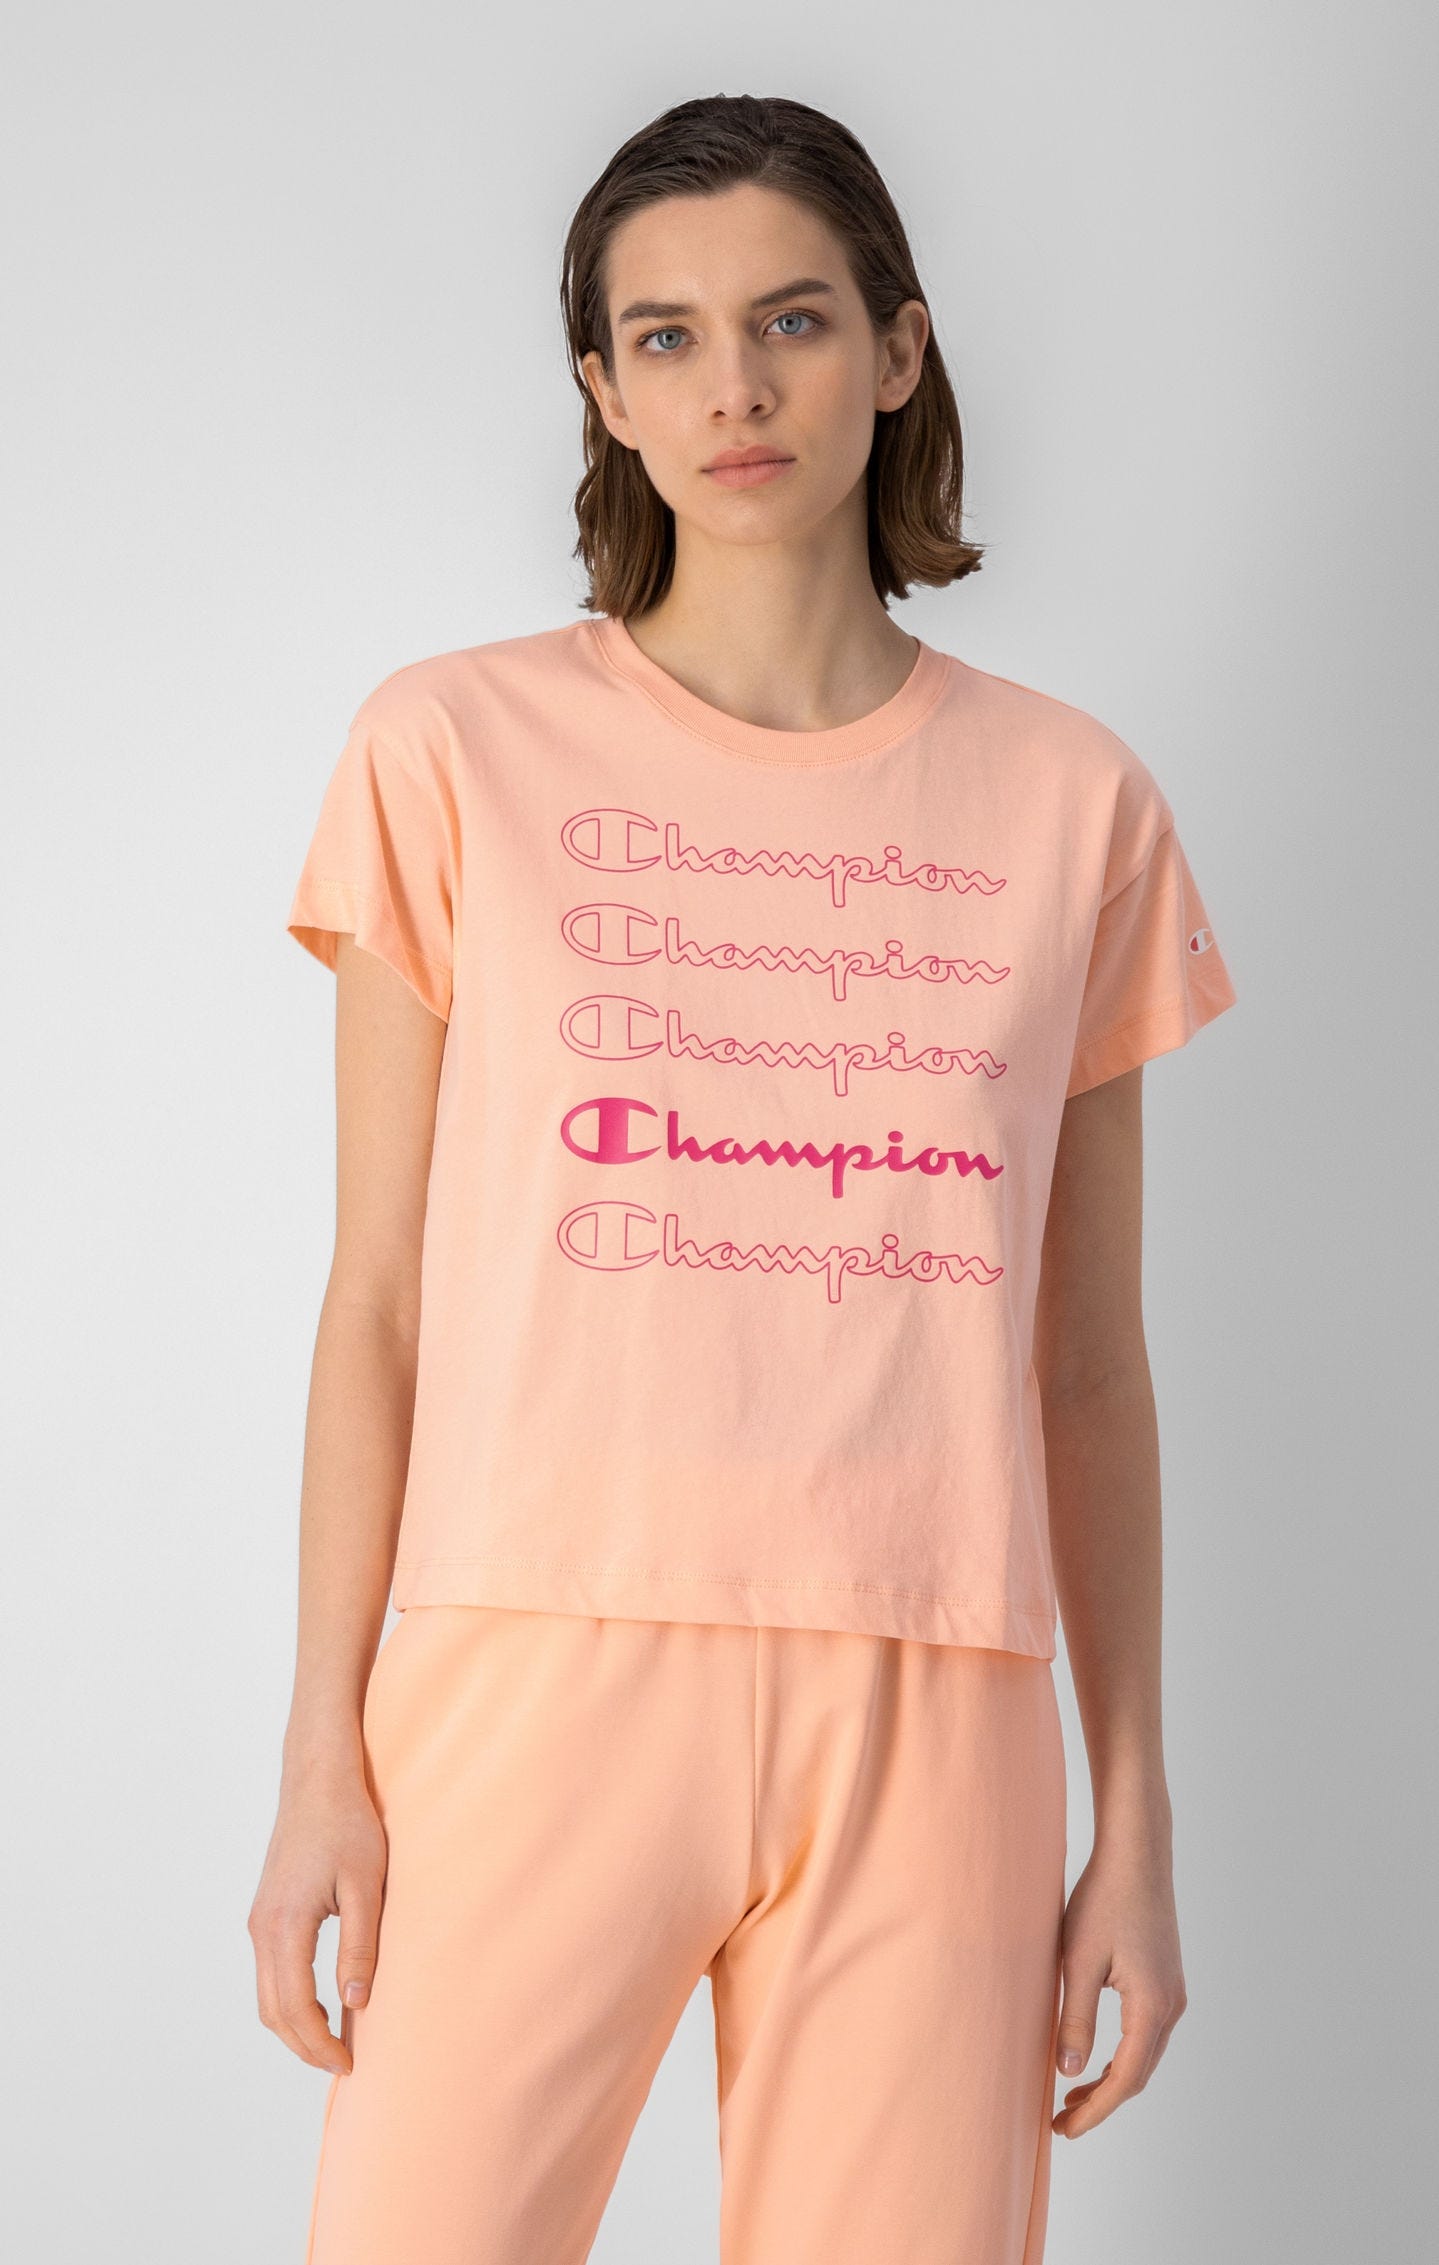 T-shirt boxy à logo Champion répété